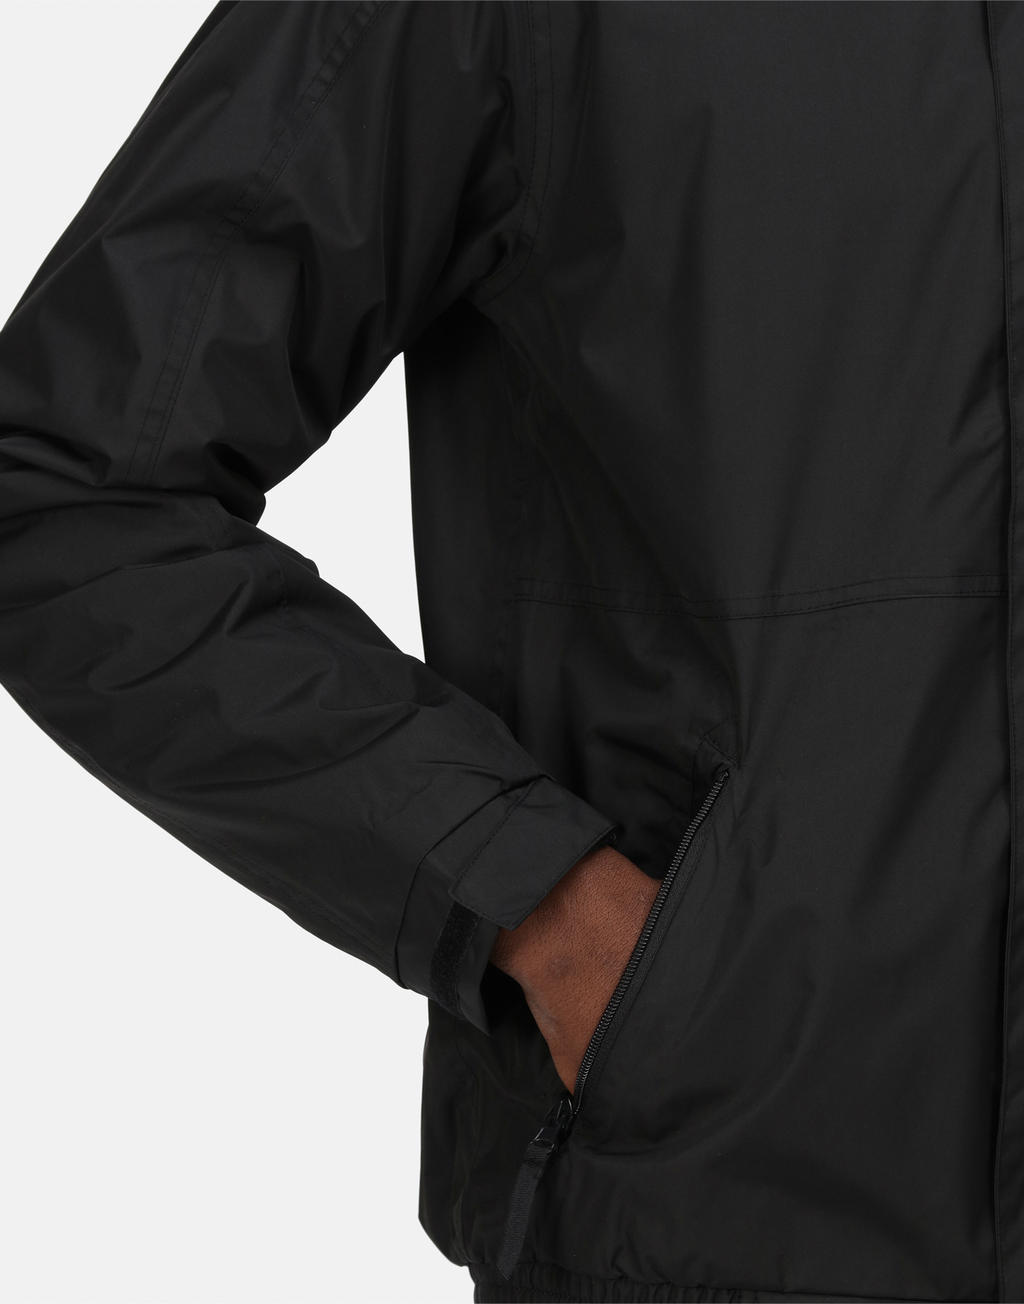  Eco Dover Jacket in Farbe Black/Ash